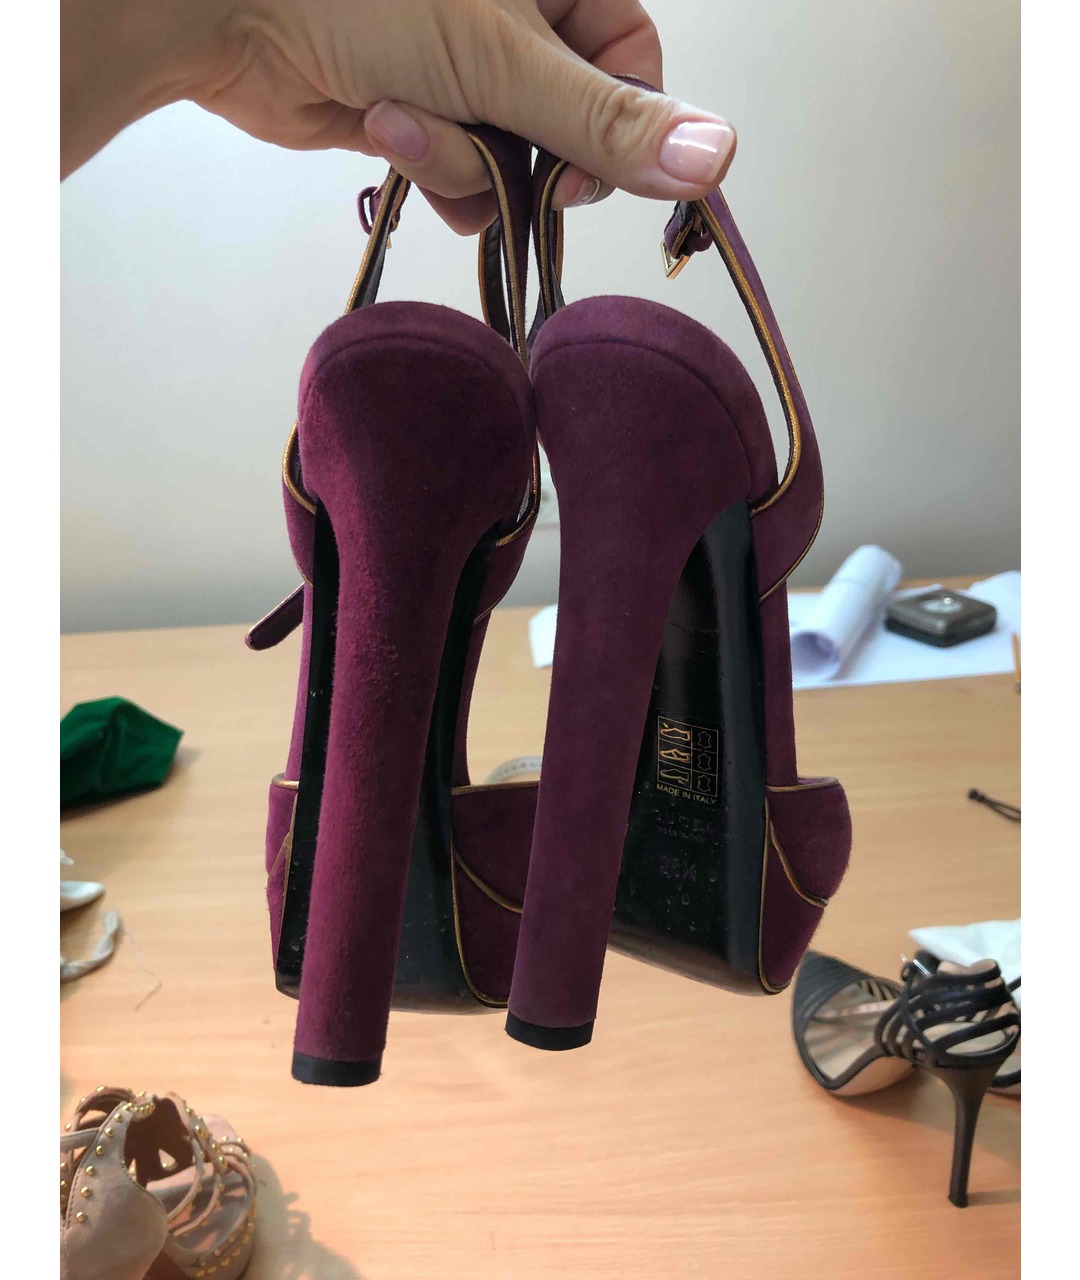 GUCCI Фиолетовые замшевые туфли, фото 2